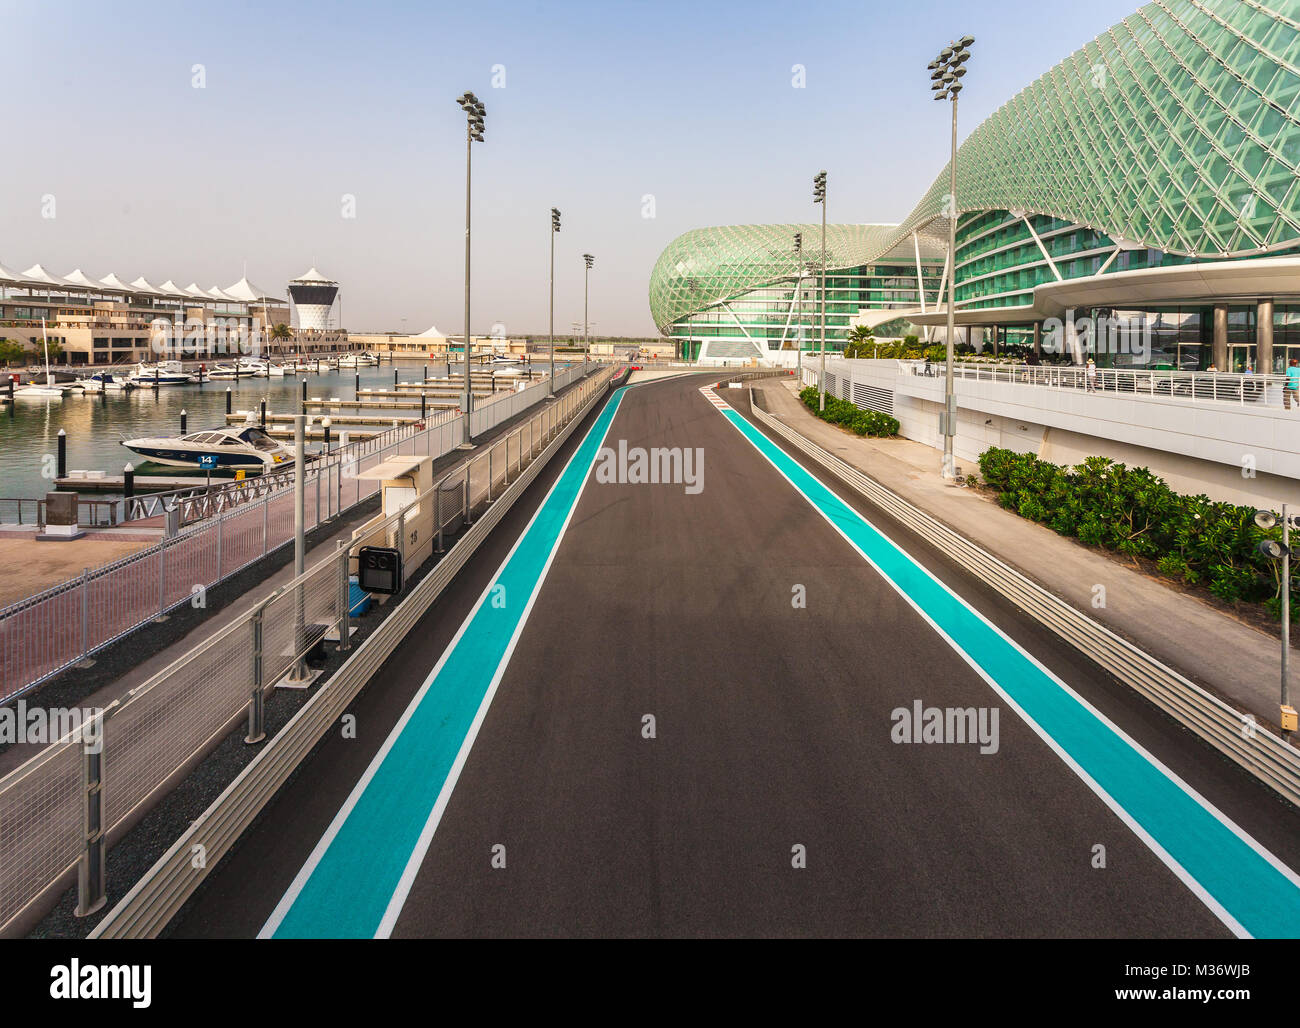 ABU DHABI, VAE - 13. Mai 2014: Der Yas Marina Formel 1-Grand Prix-Rennstrecke. Inmitten einer Marina, mit innovativem Design. Die Schaltung ist so konzipiert, dass b Stockfoto